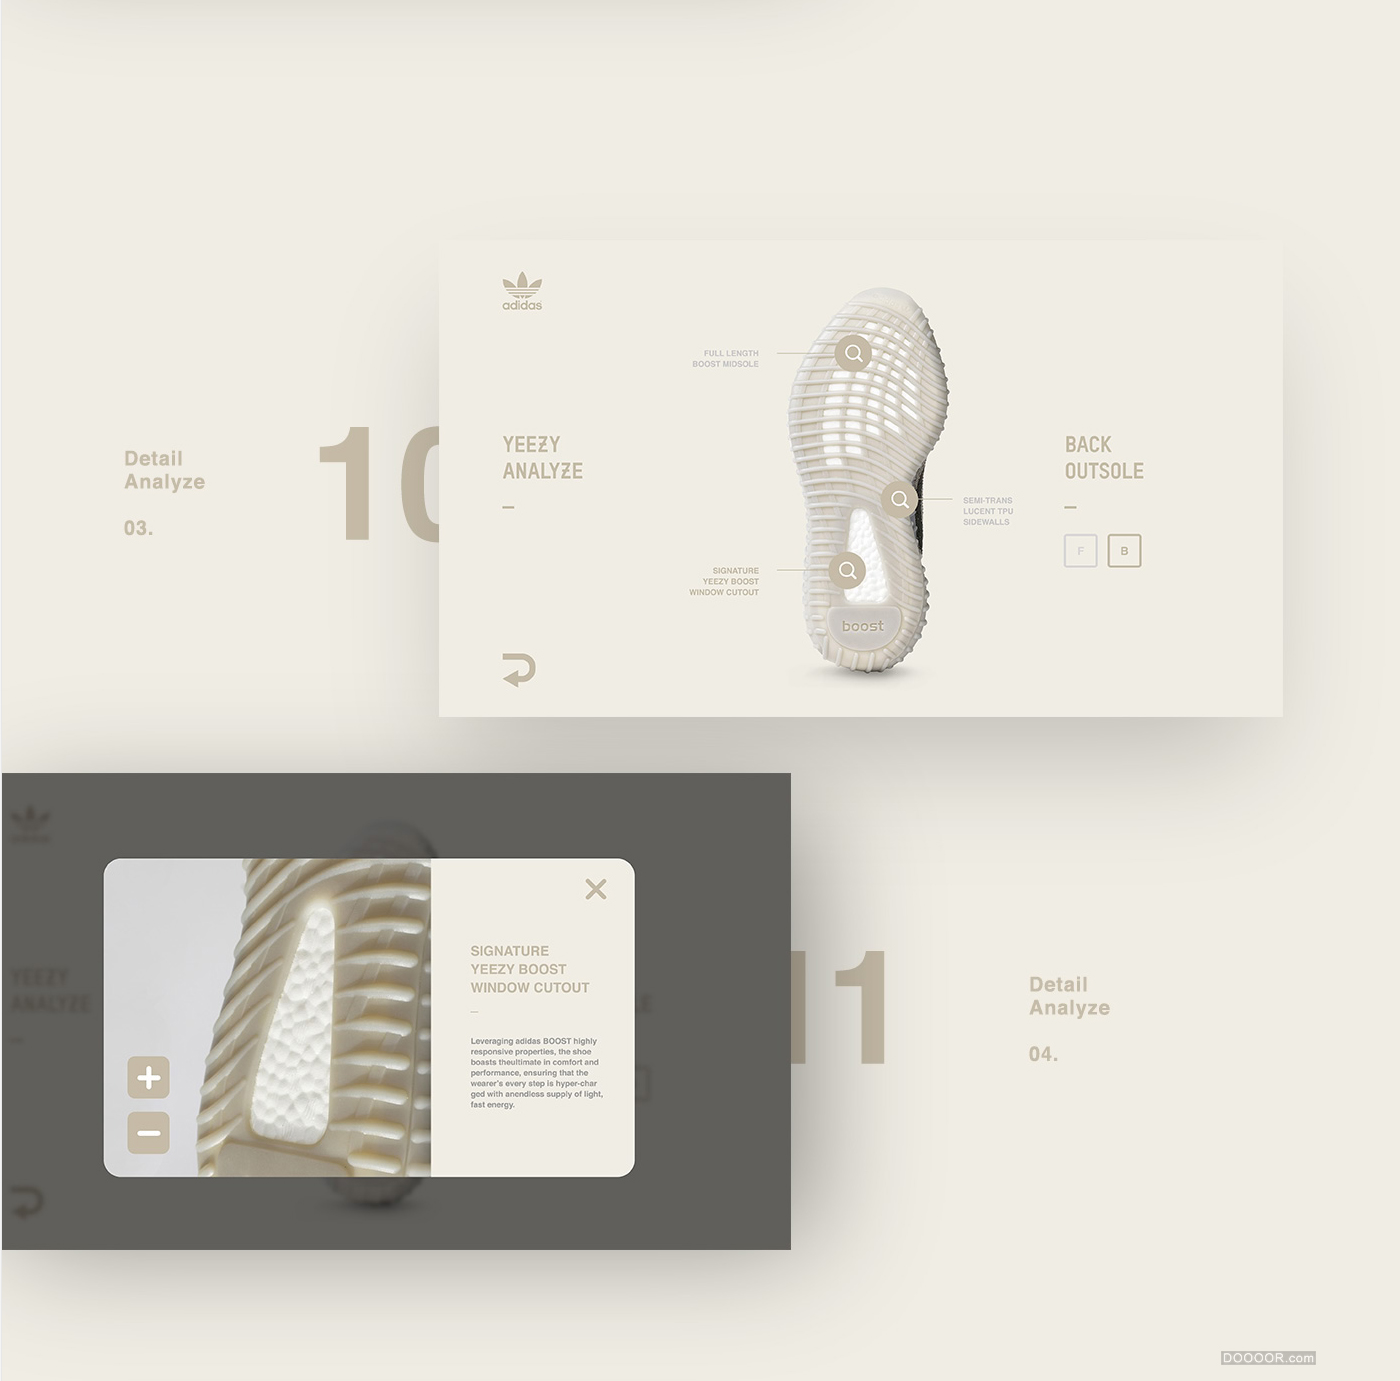 [UI-Design]-Adidas-Yeezy-Promotion-Kiosk_10.jpg